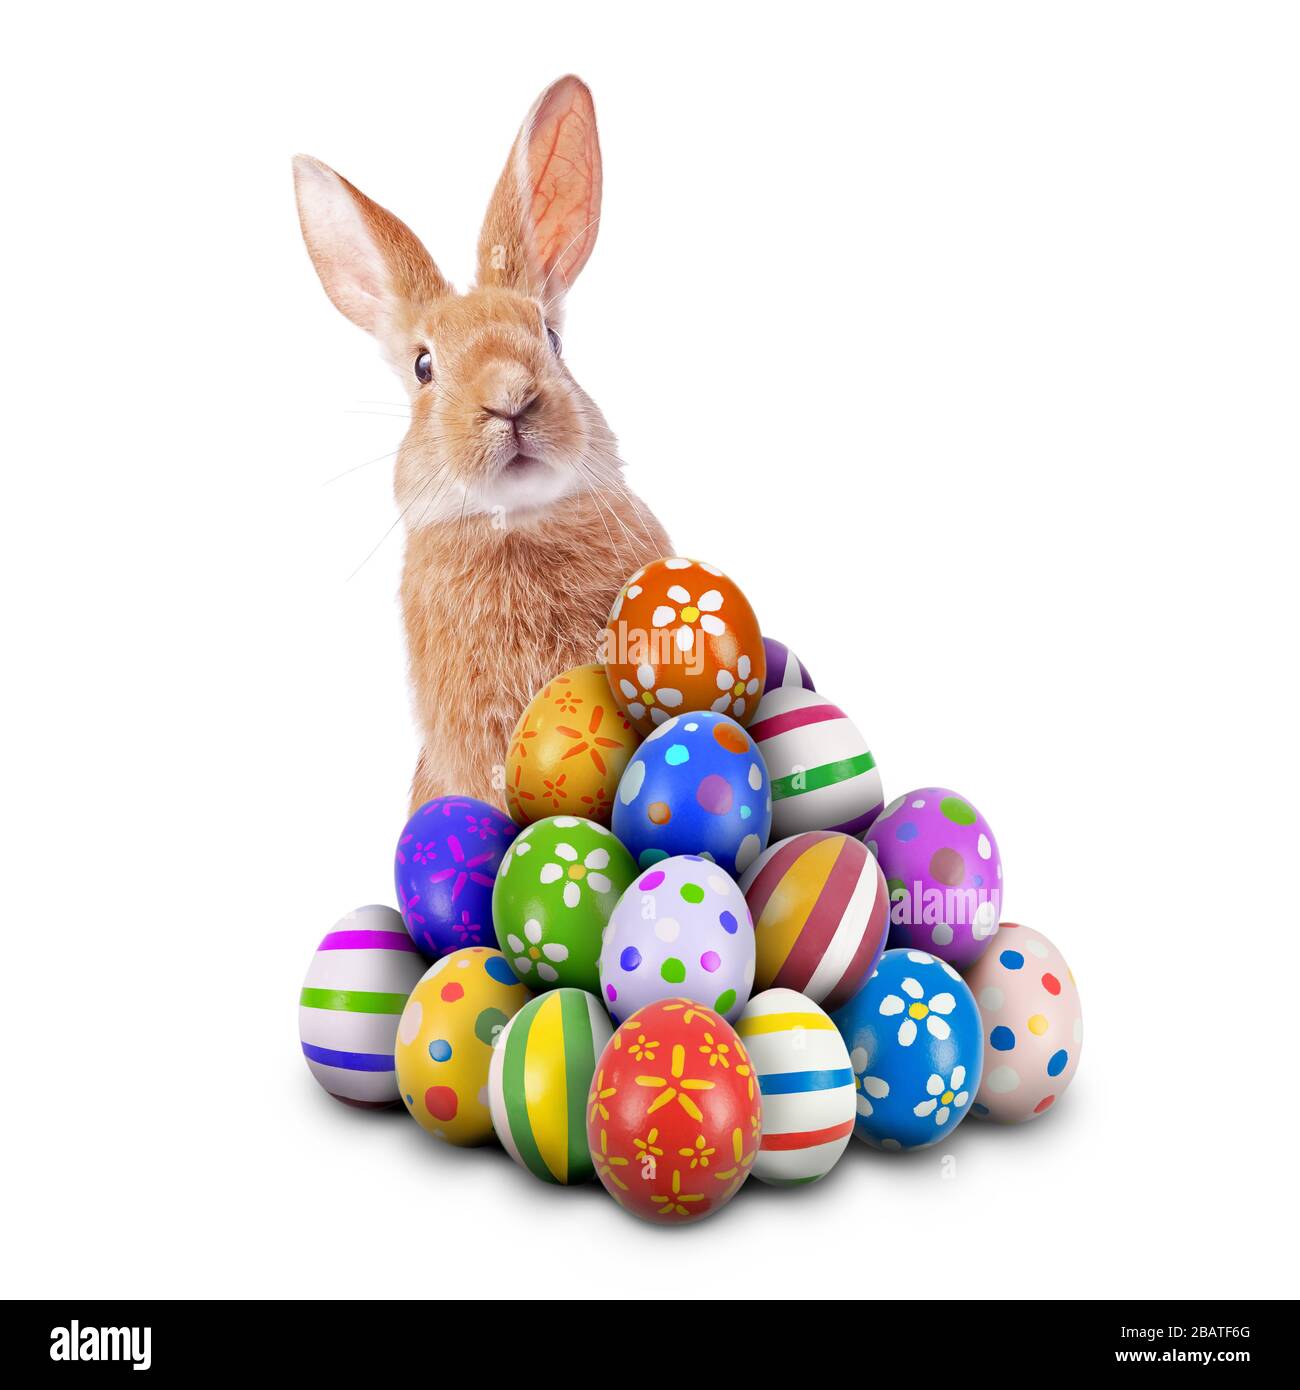 Curieux mignon drôle lapin de Pâques lapin de Pâques peeking derrière pile peint oeufs de Pâques décorés orné chasse aux œufs de Pâques jeu isolé fond blanc Banque D'Images